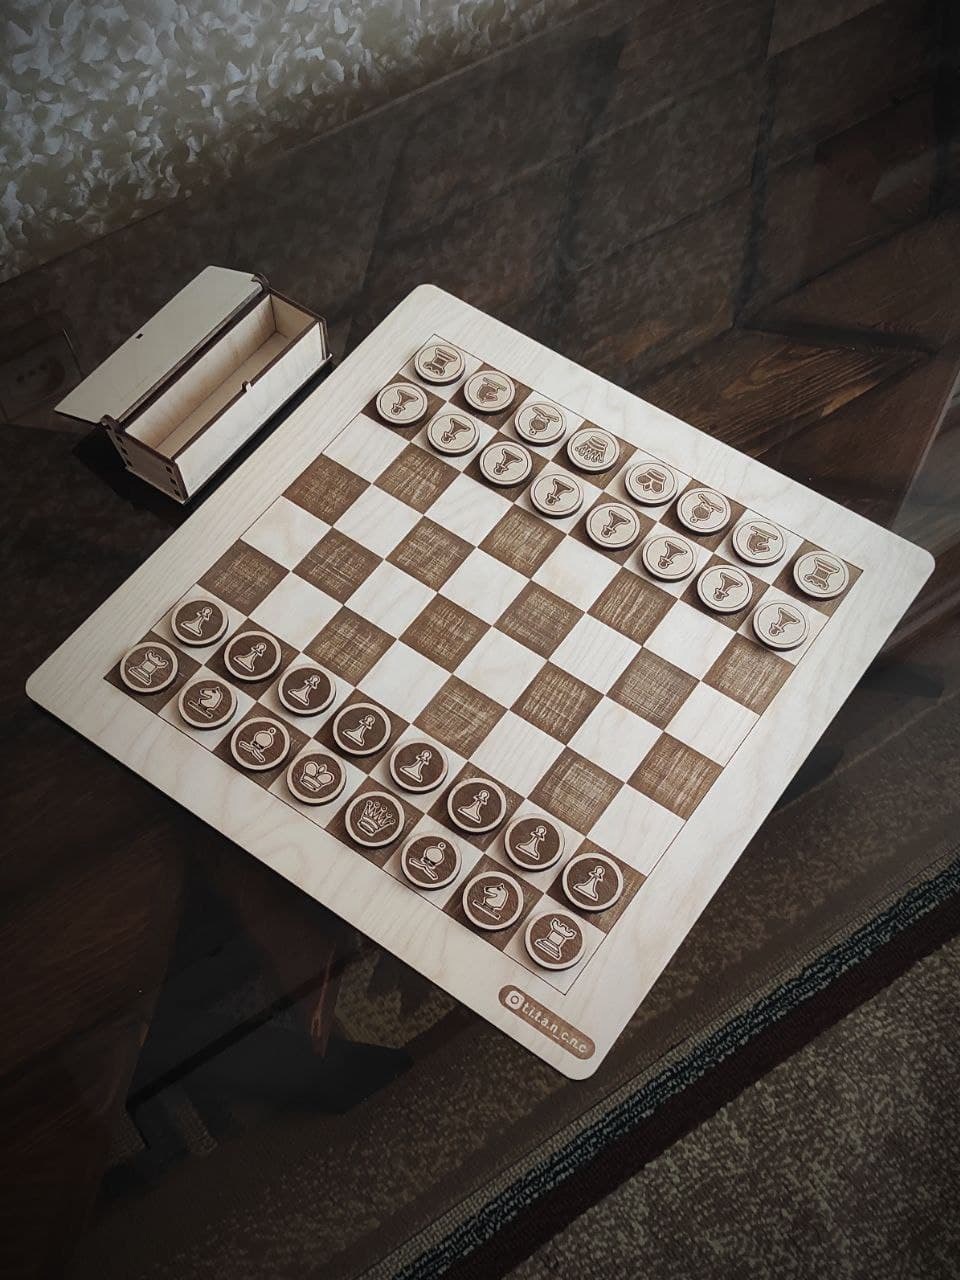 Caja y juego de ajedrez de madera cortados con láser